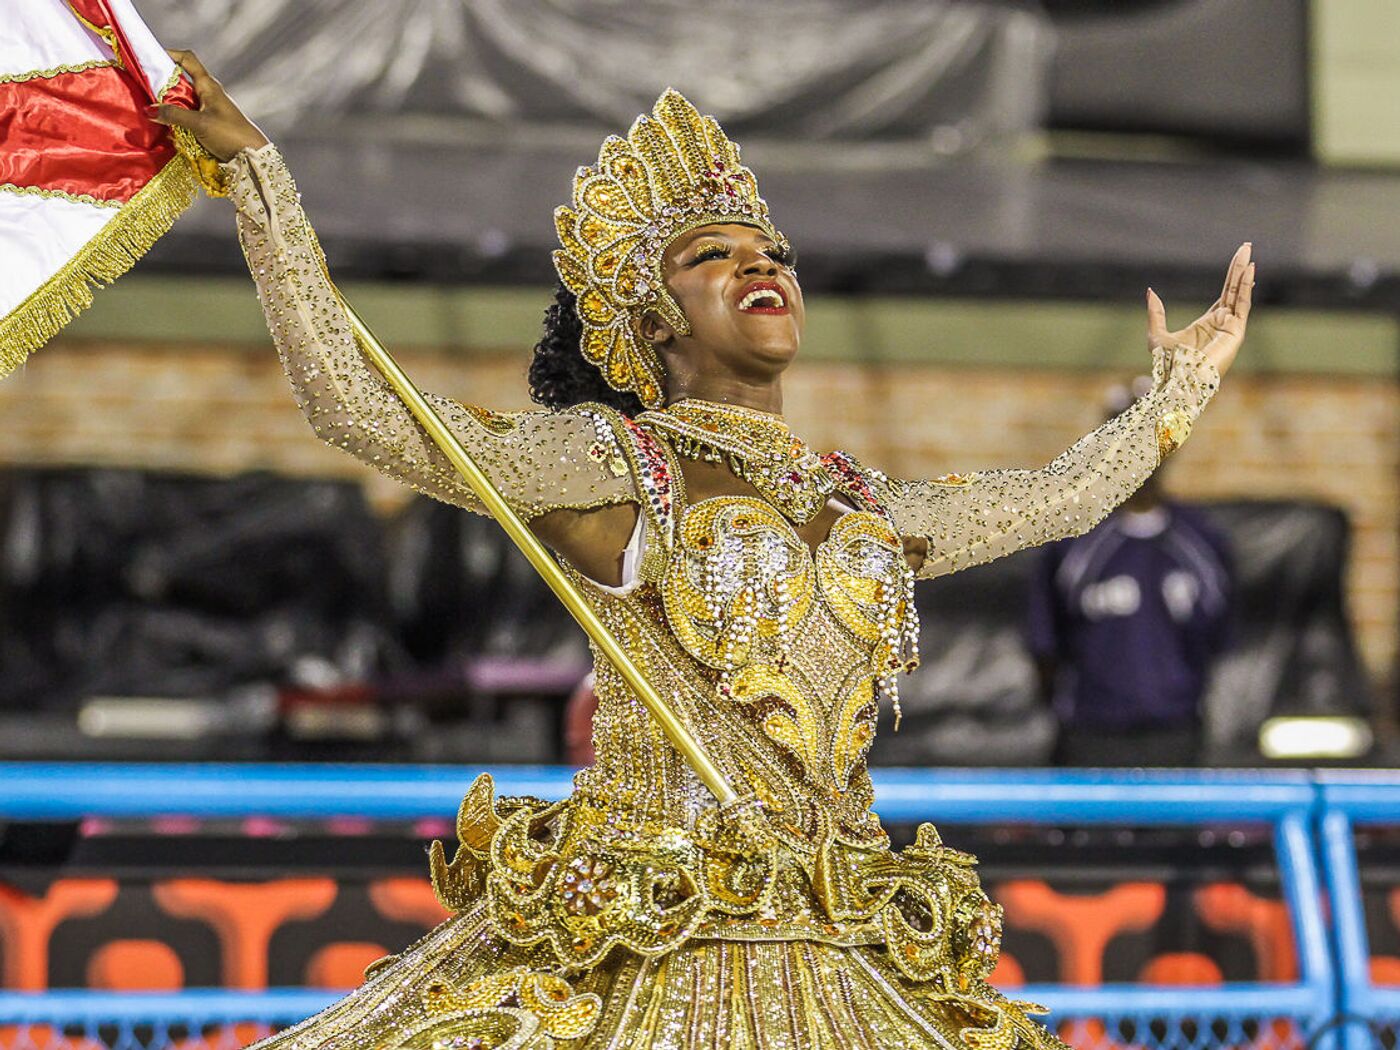 Una campaña que invita a no usar disfraces de indígenas desata la polémica  en los carnavales de Brasil